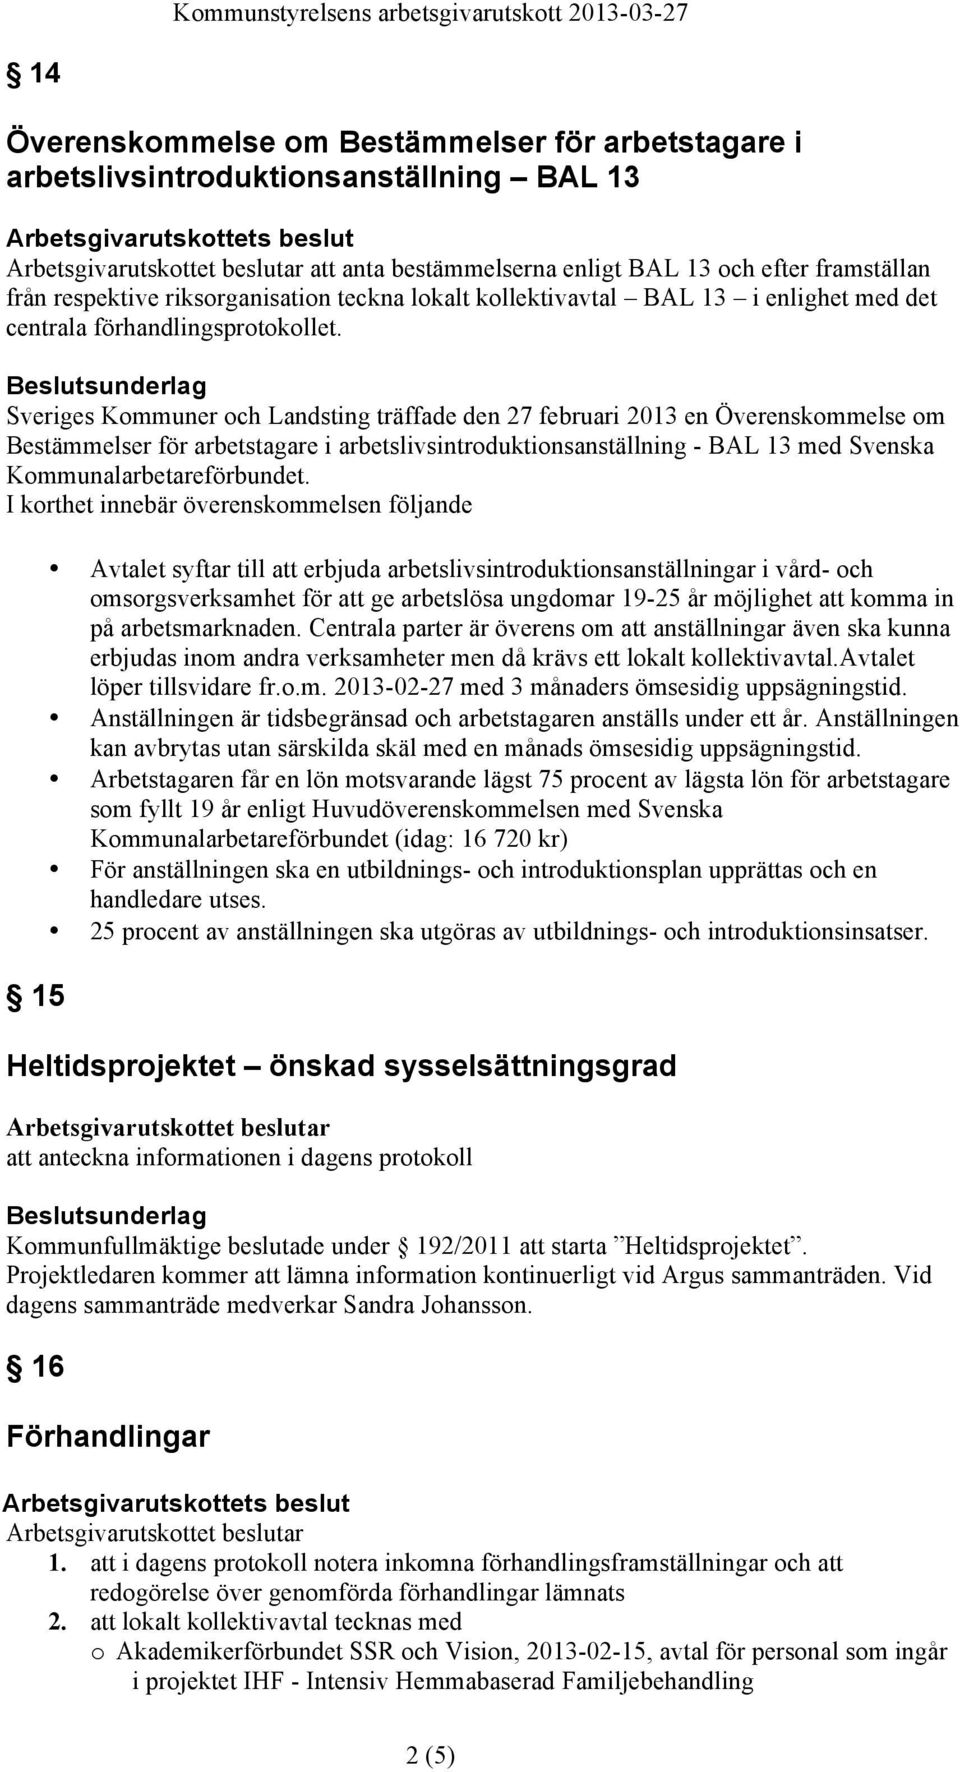 Sveriges Kommuner och Landsting träffade den 27 februari 2013 en Överenskommelse om Bestämmelser för arbetstagare i arbetslivsintroduktionsanställning - BAL 13 med Svenska Kommunalarbetareförbundet.